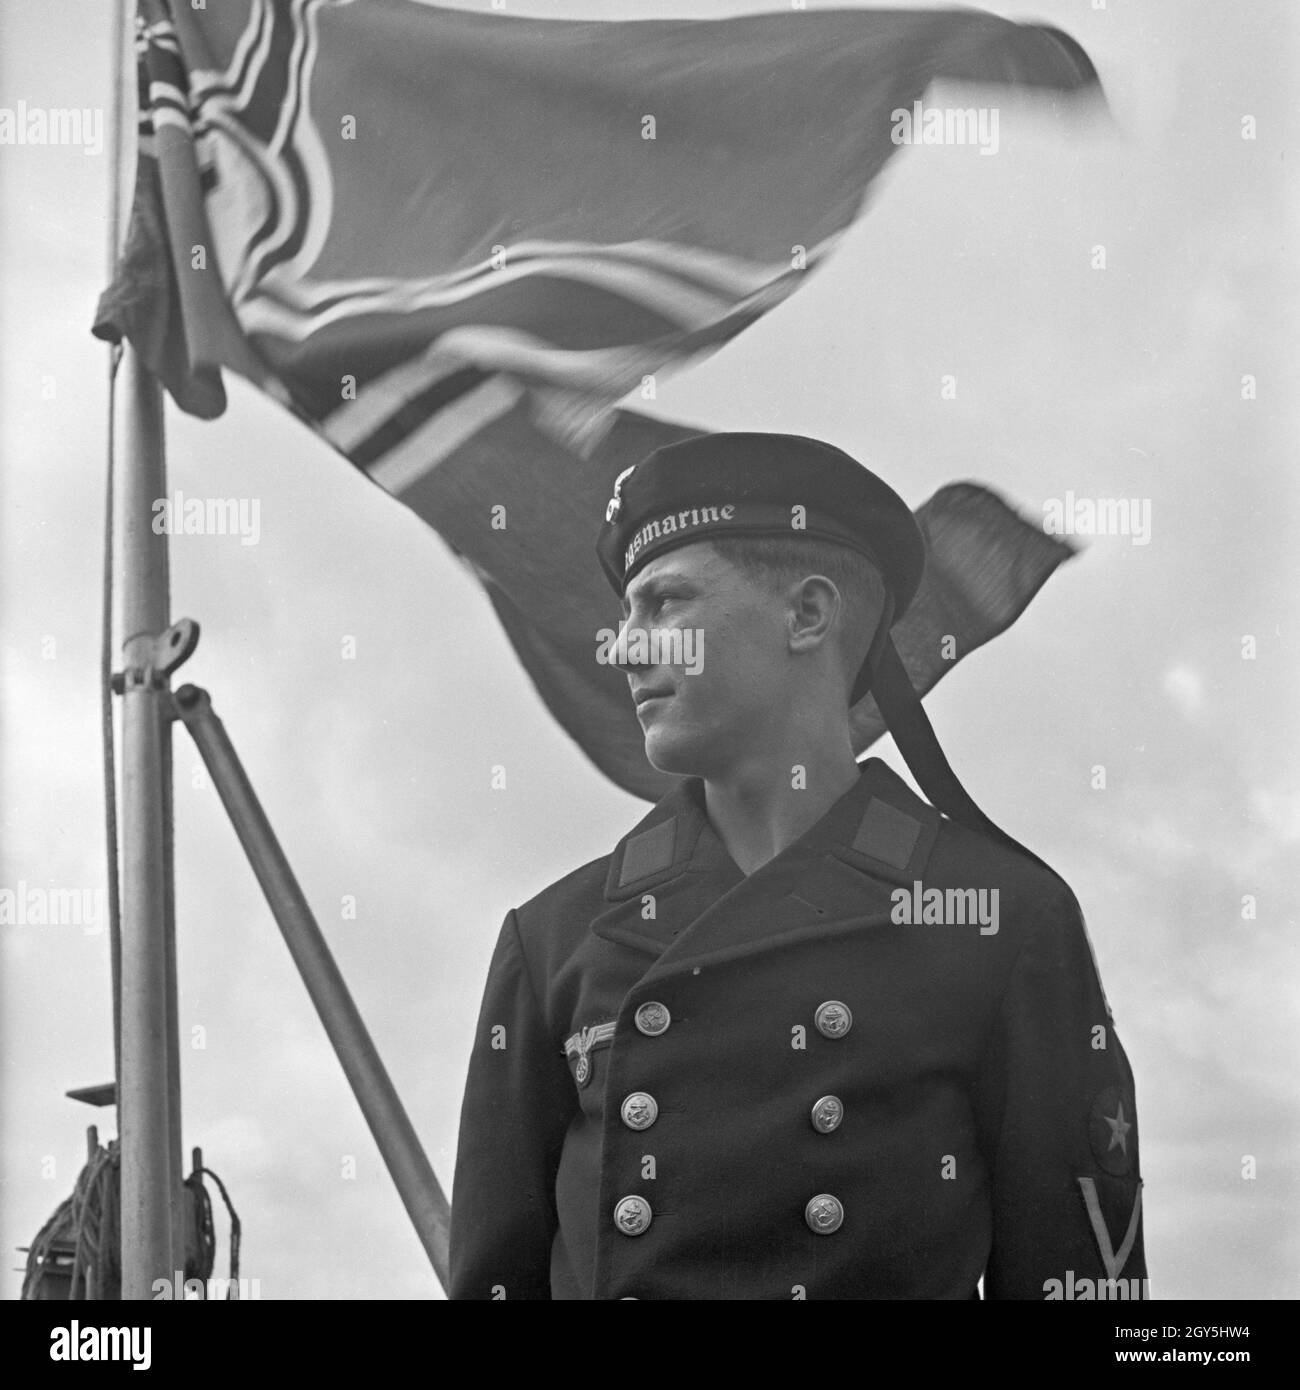 Original-Bildunterschrift : Porträt eines Matrosen der deutschen Kriegsmarine, Deutschland 1940er Jahre. Portrait d'un soldat de la marine allemande, l'Allemagne des années 40. Banque D'Images